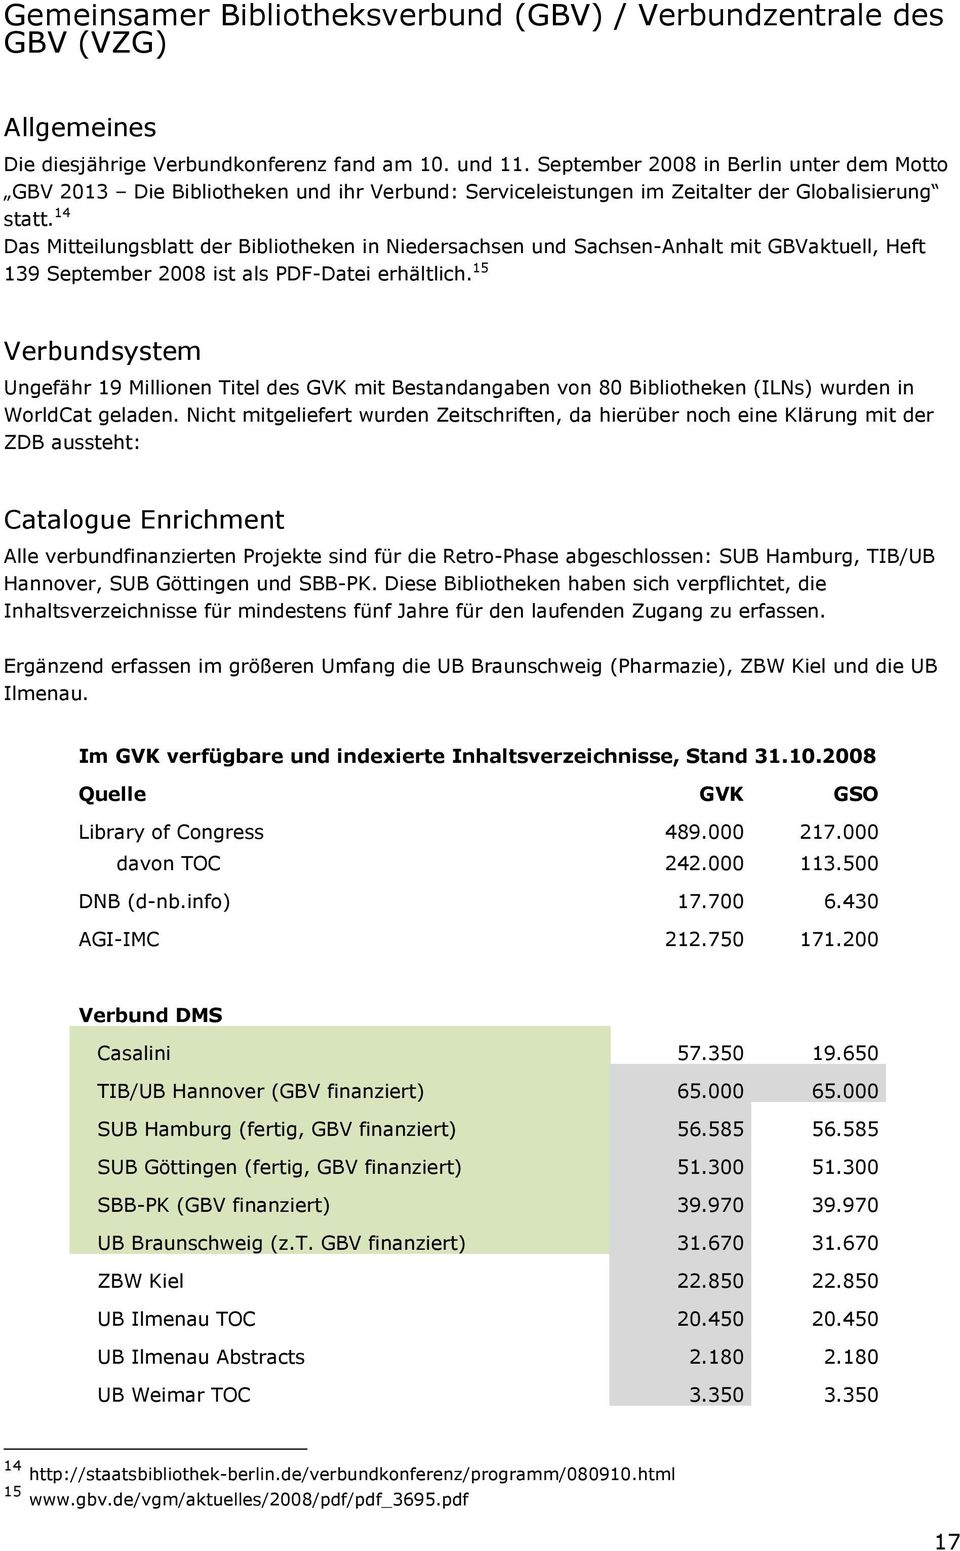 14 Das Mitteilungsblatt der Bibliotheken in Niedersachsen und Sachsen-Anhalt mit GBVaktuell, Heft 139 September 2008 ist als PDF-Datei erhältlich.